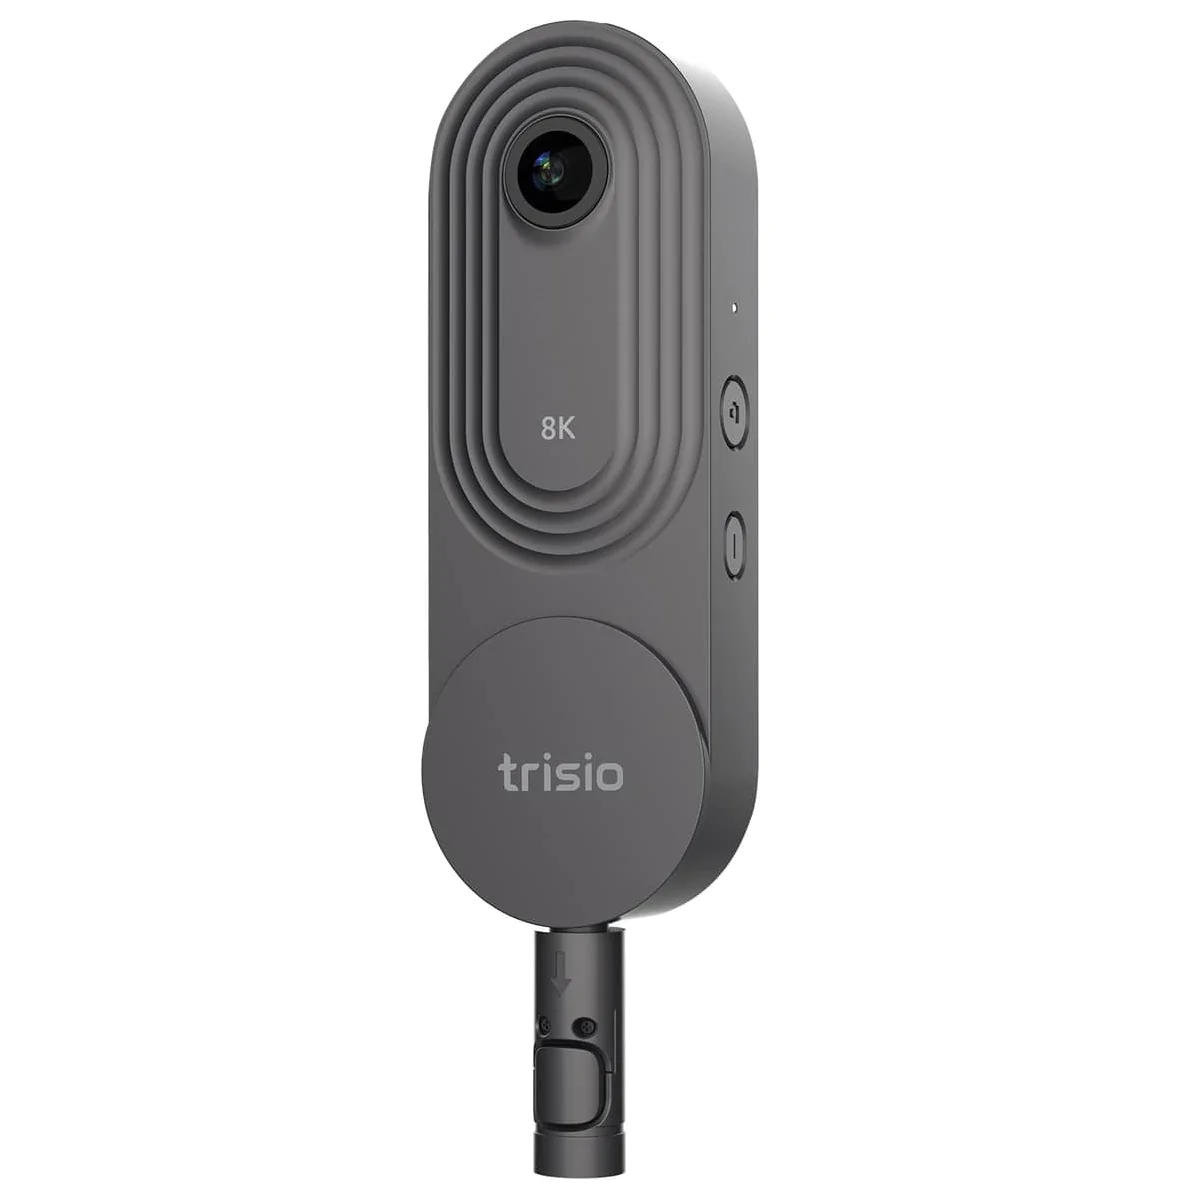 Vista de la cámara Trisio Lite 2 con el adaptador Quick plug-in.